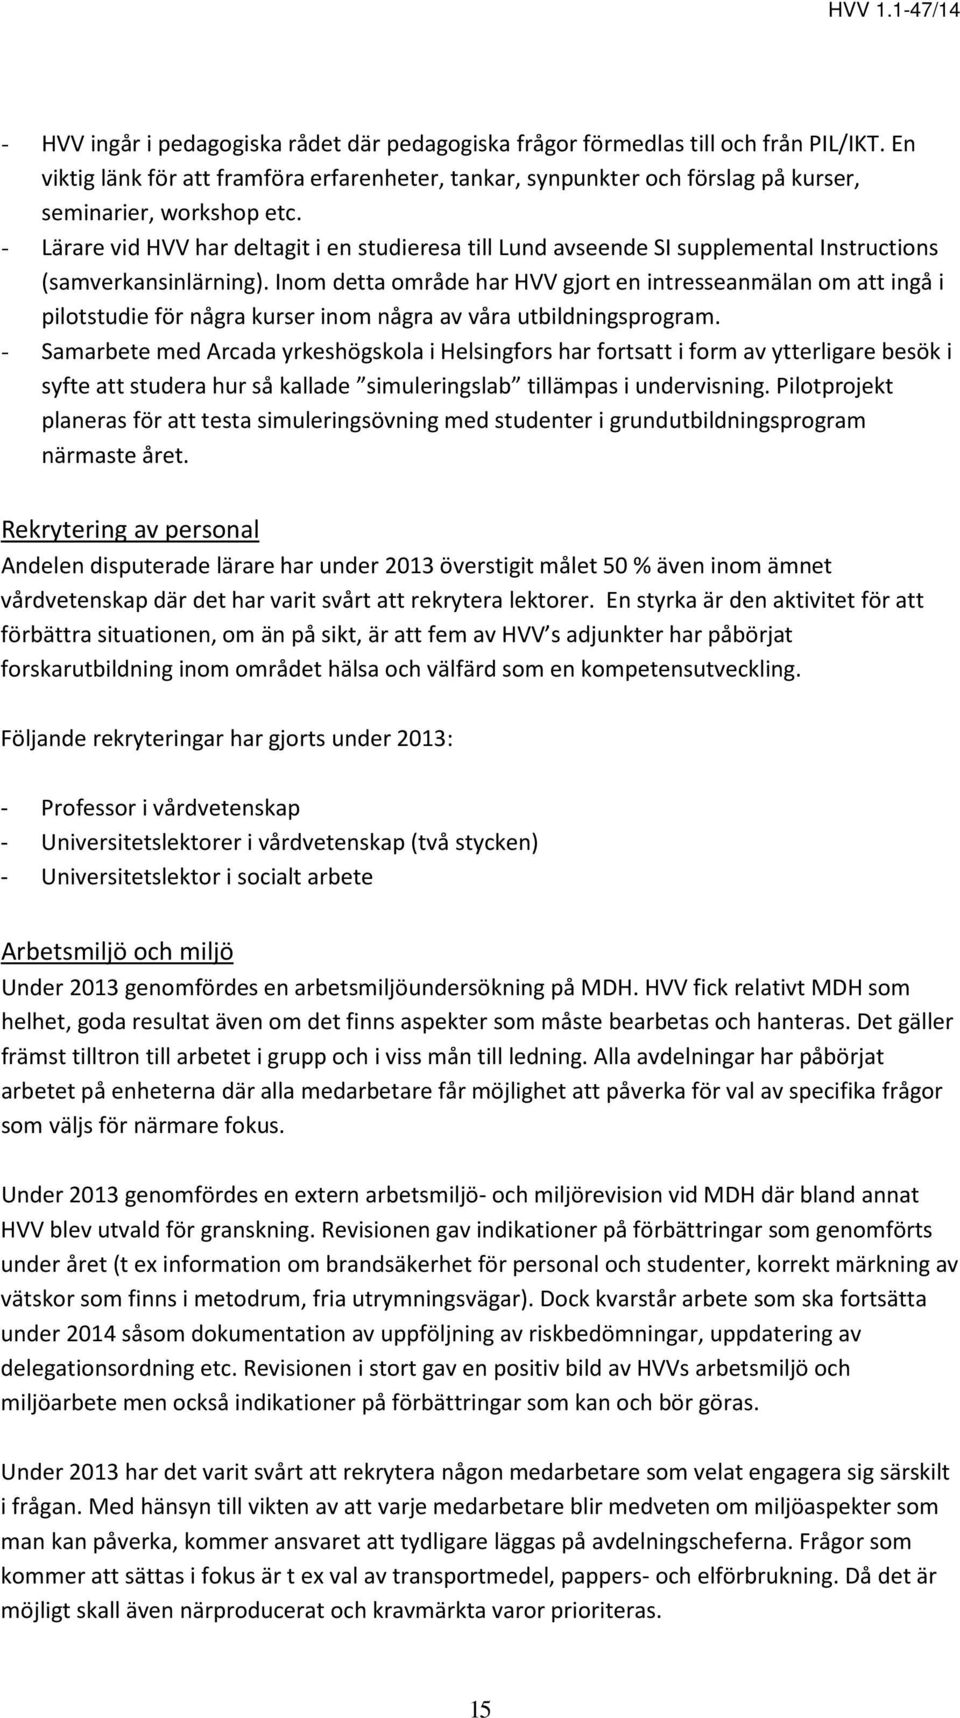 - Lärare vid HVV har deltagit i en studieresa till Lund avseende SI supplemental Instructions (samverkansinlärning).